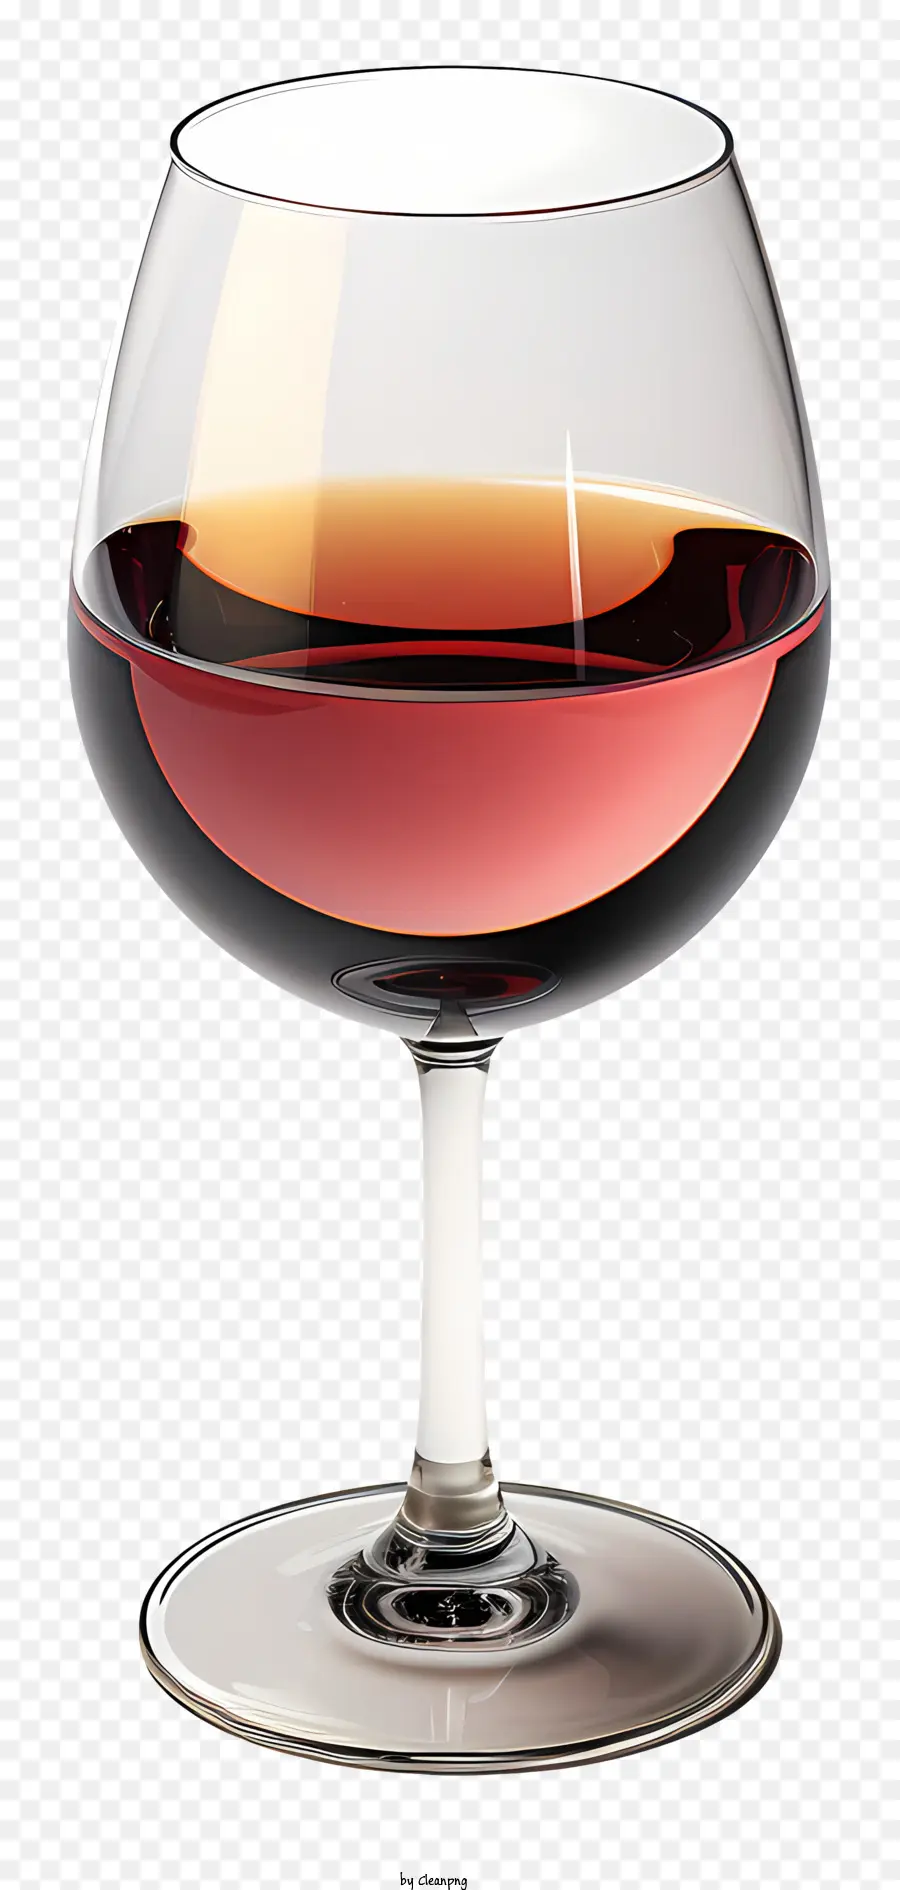 Weinglas - Weinglas mit roter Flüssigkeit auf schwarzem Hintergrund